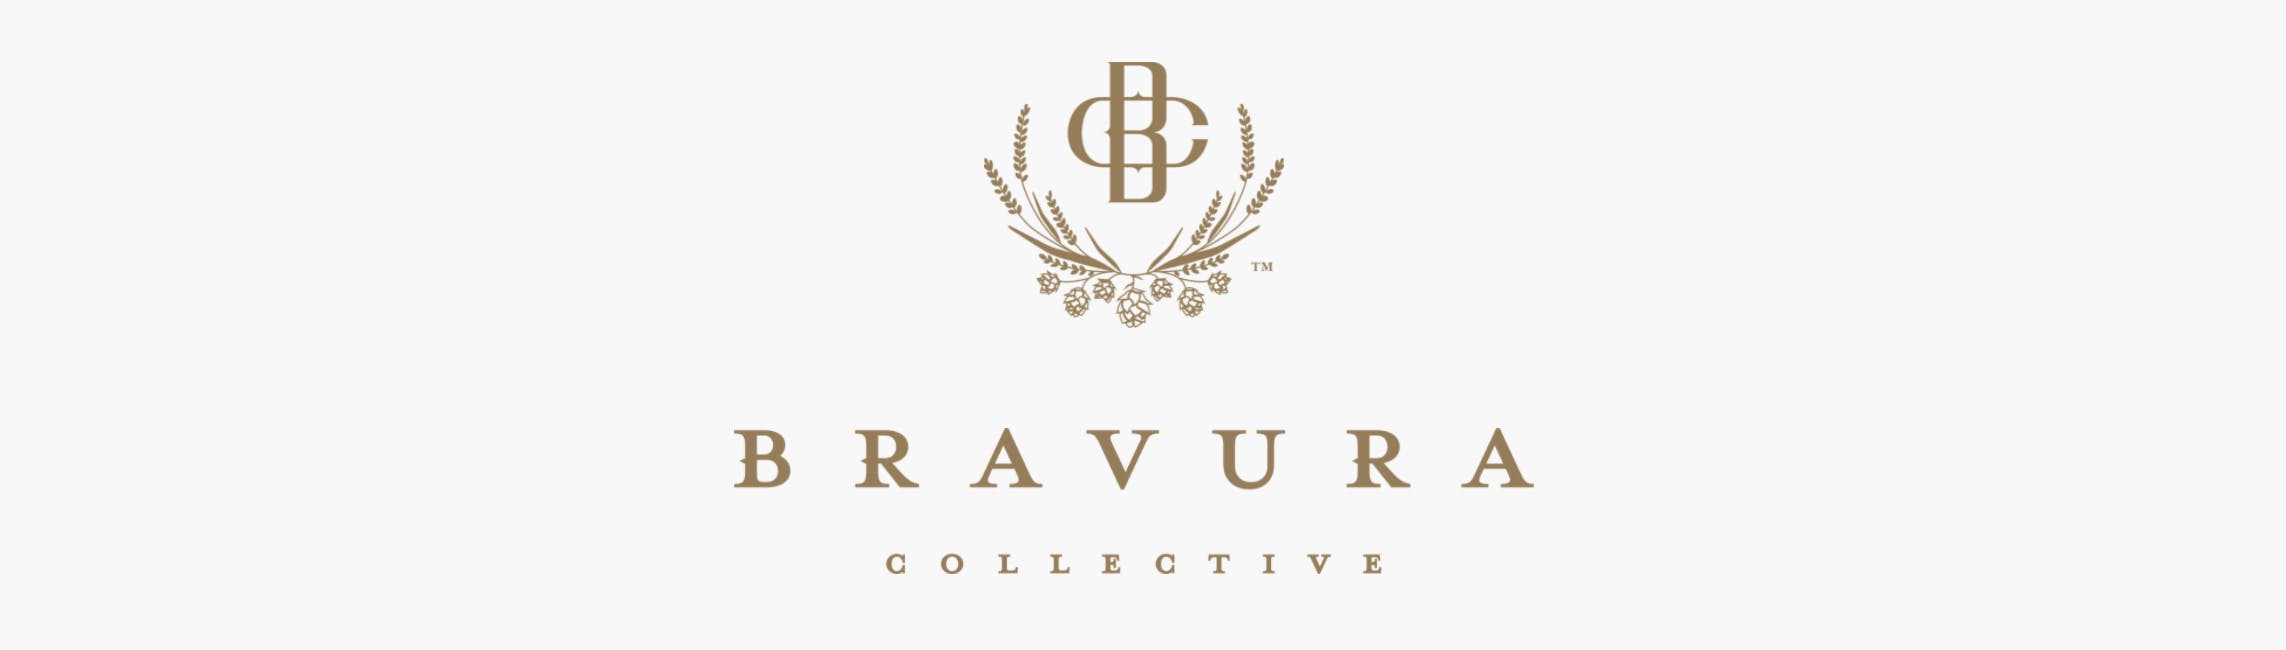 Bravura Collective